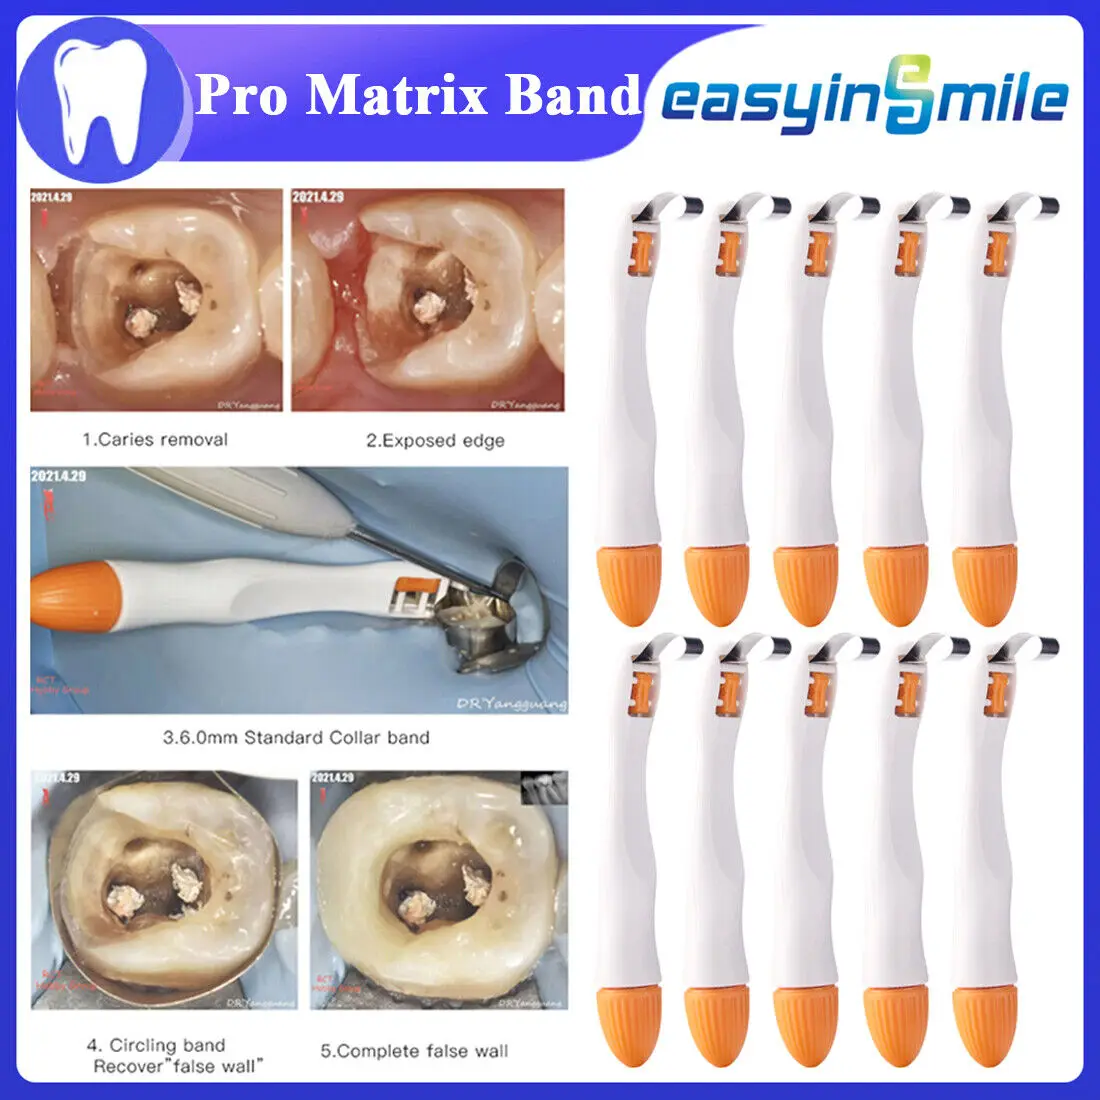 

Easyinsmile 10Pcs Pro Matrix Bands Dental Pre Formed Sectional Contoured Matrice Bands Curved&Standard For Formed Adjust System